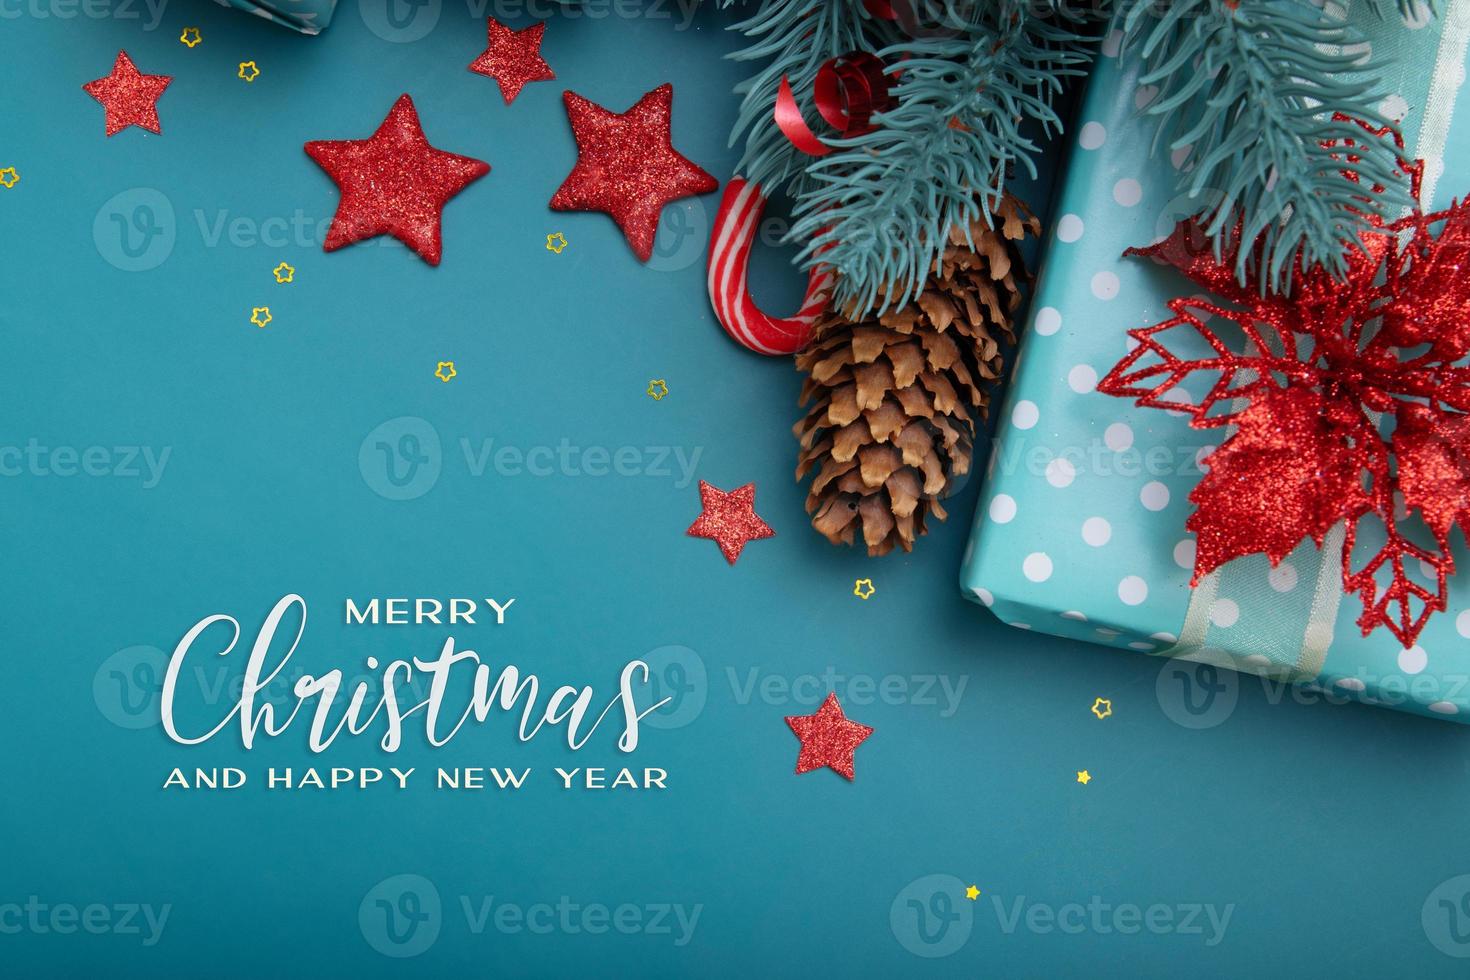 feliz navidad saludo texto con composición festiva de regalos, conos, piruletas y estrellas foto